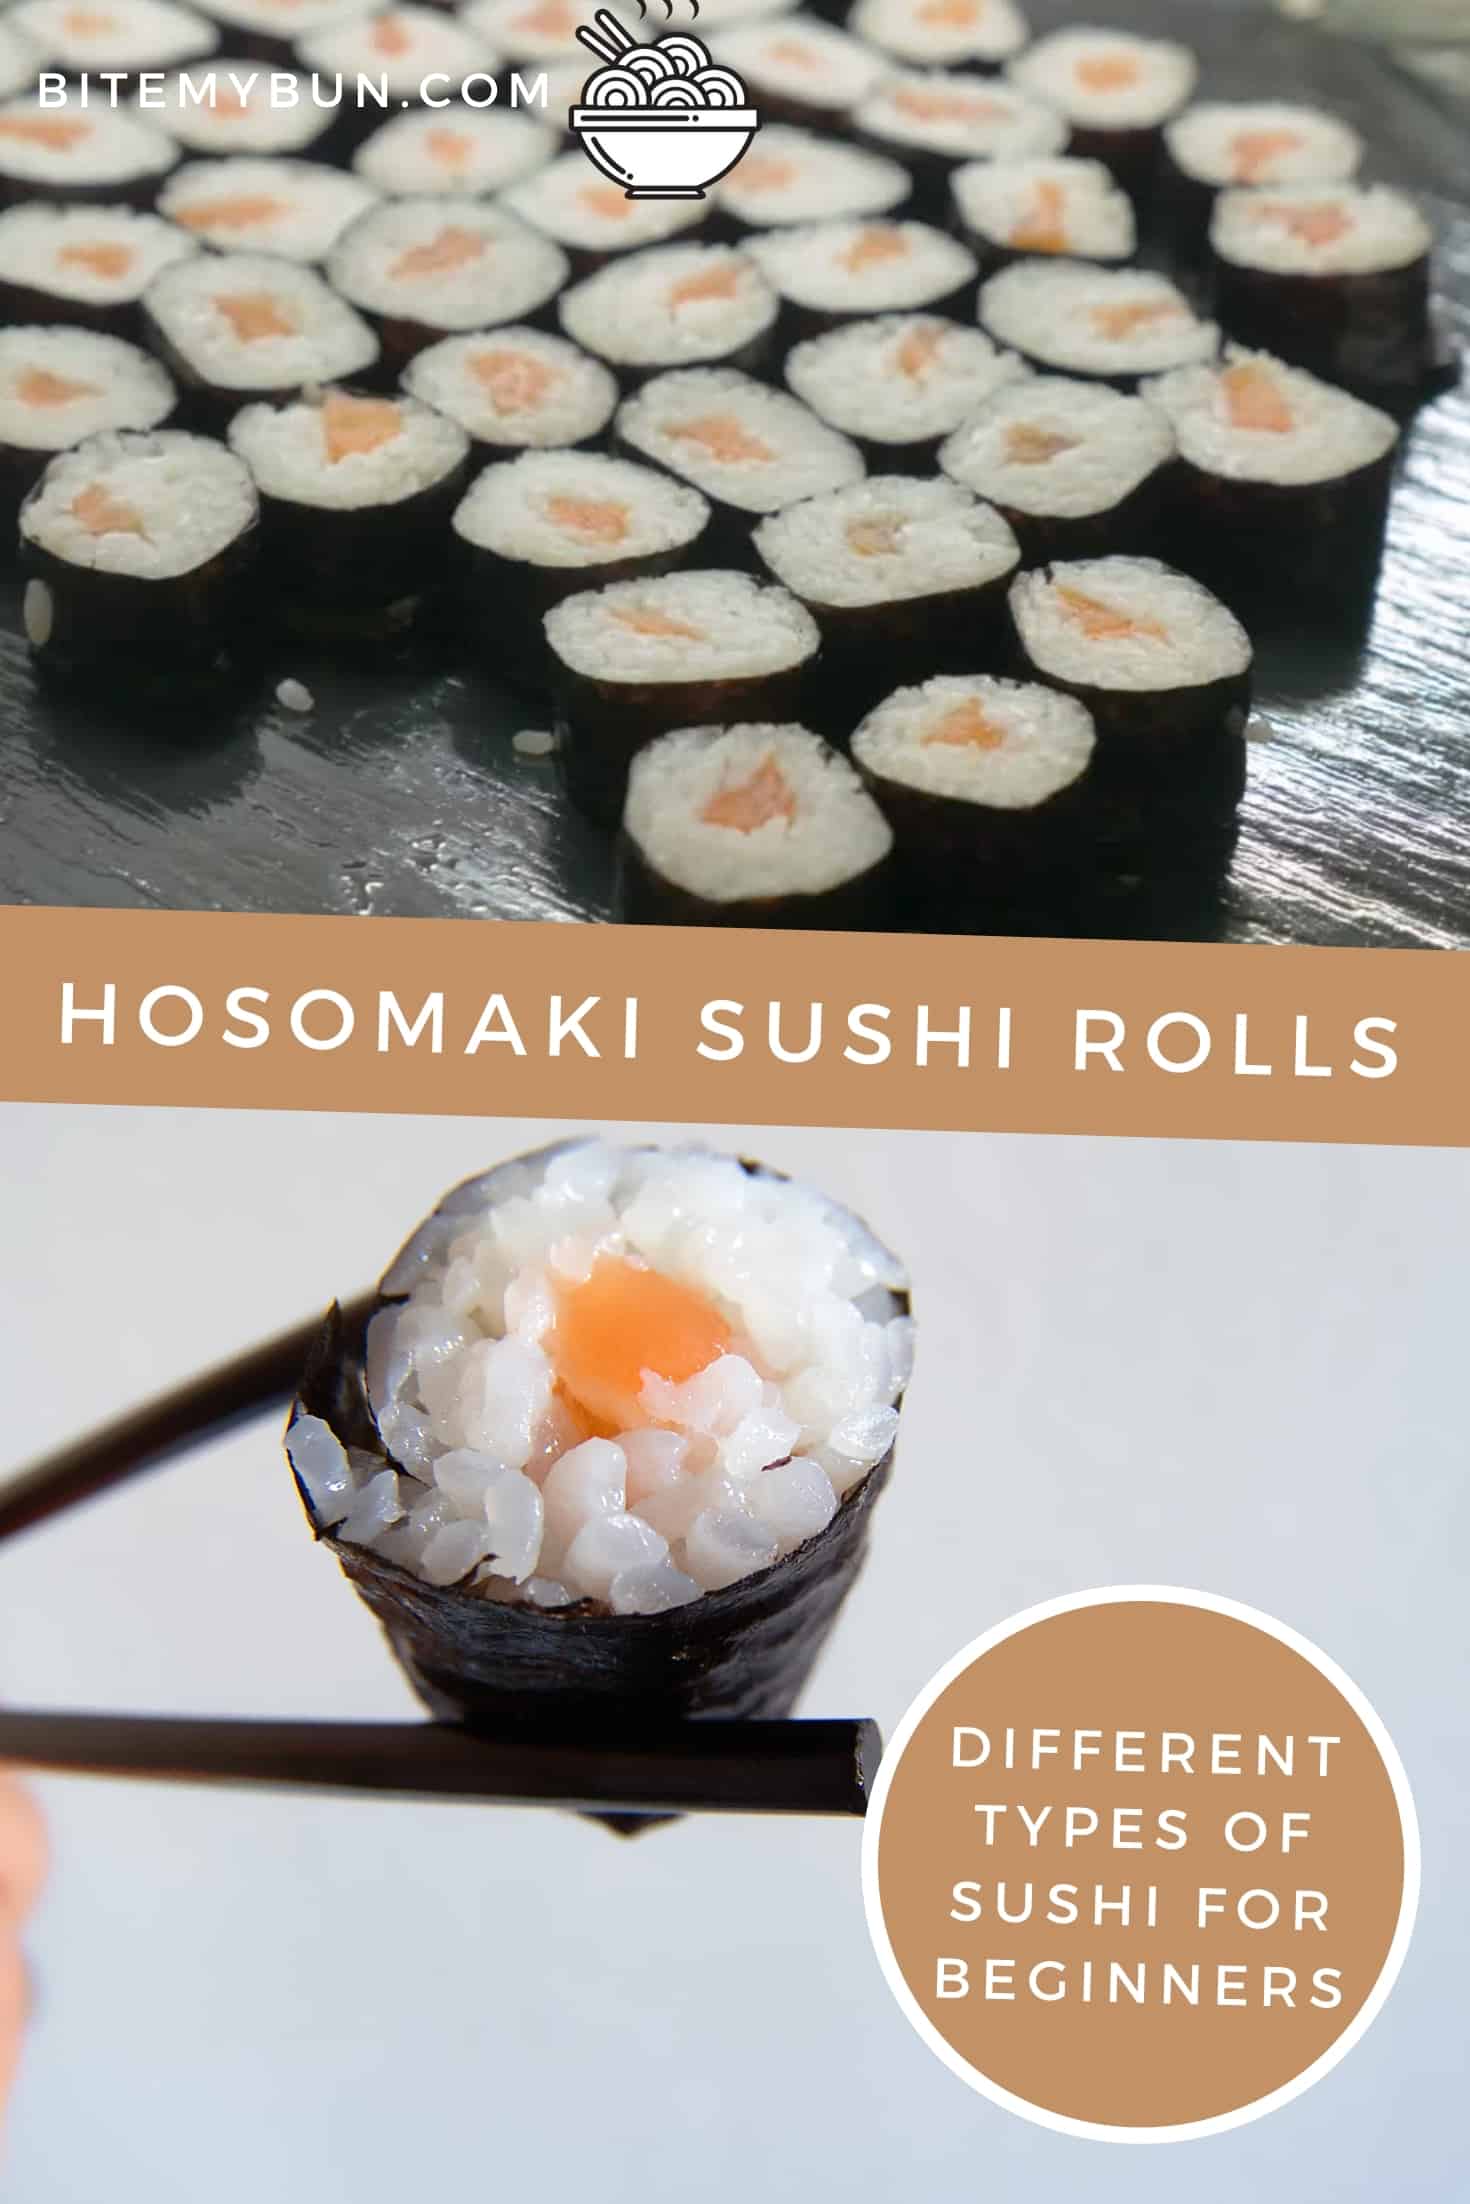 Hosomaki sushi rolls